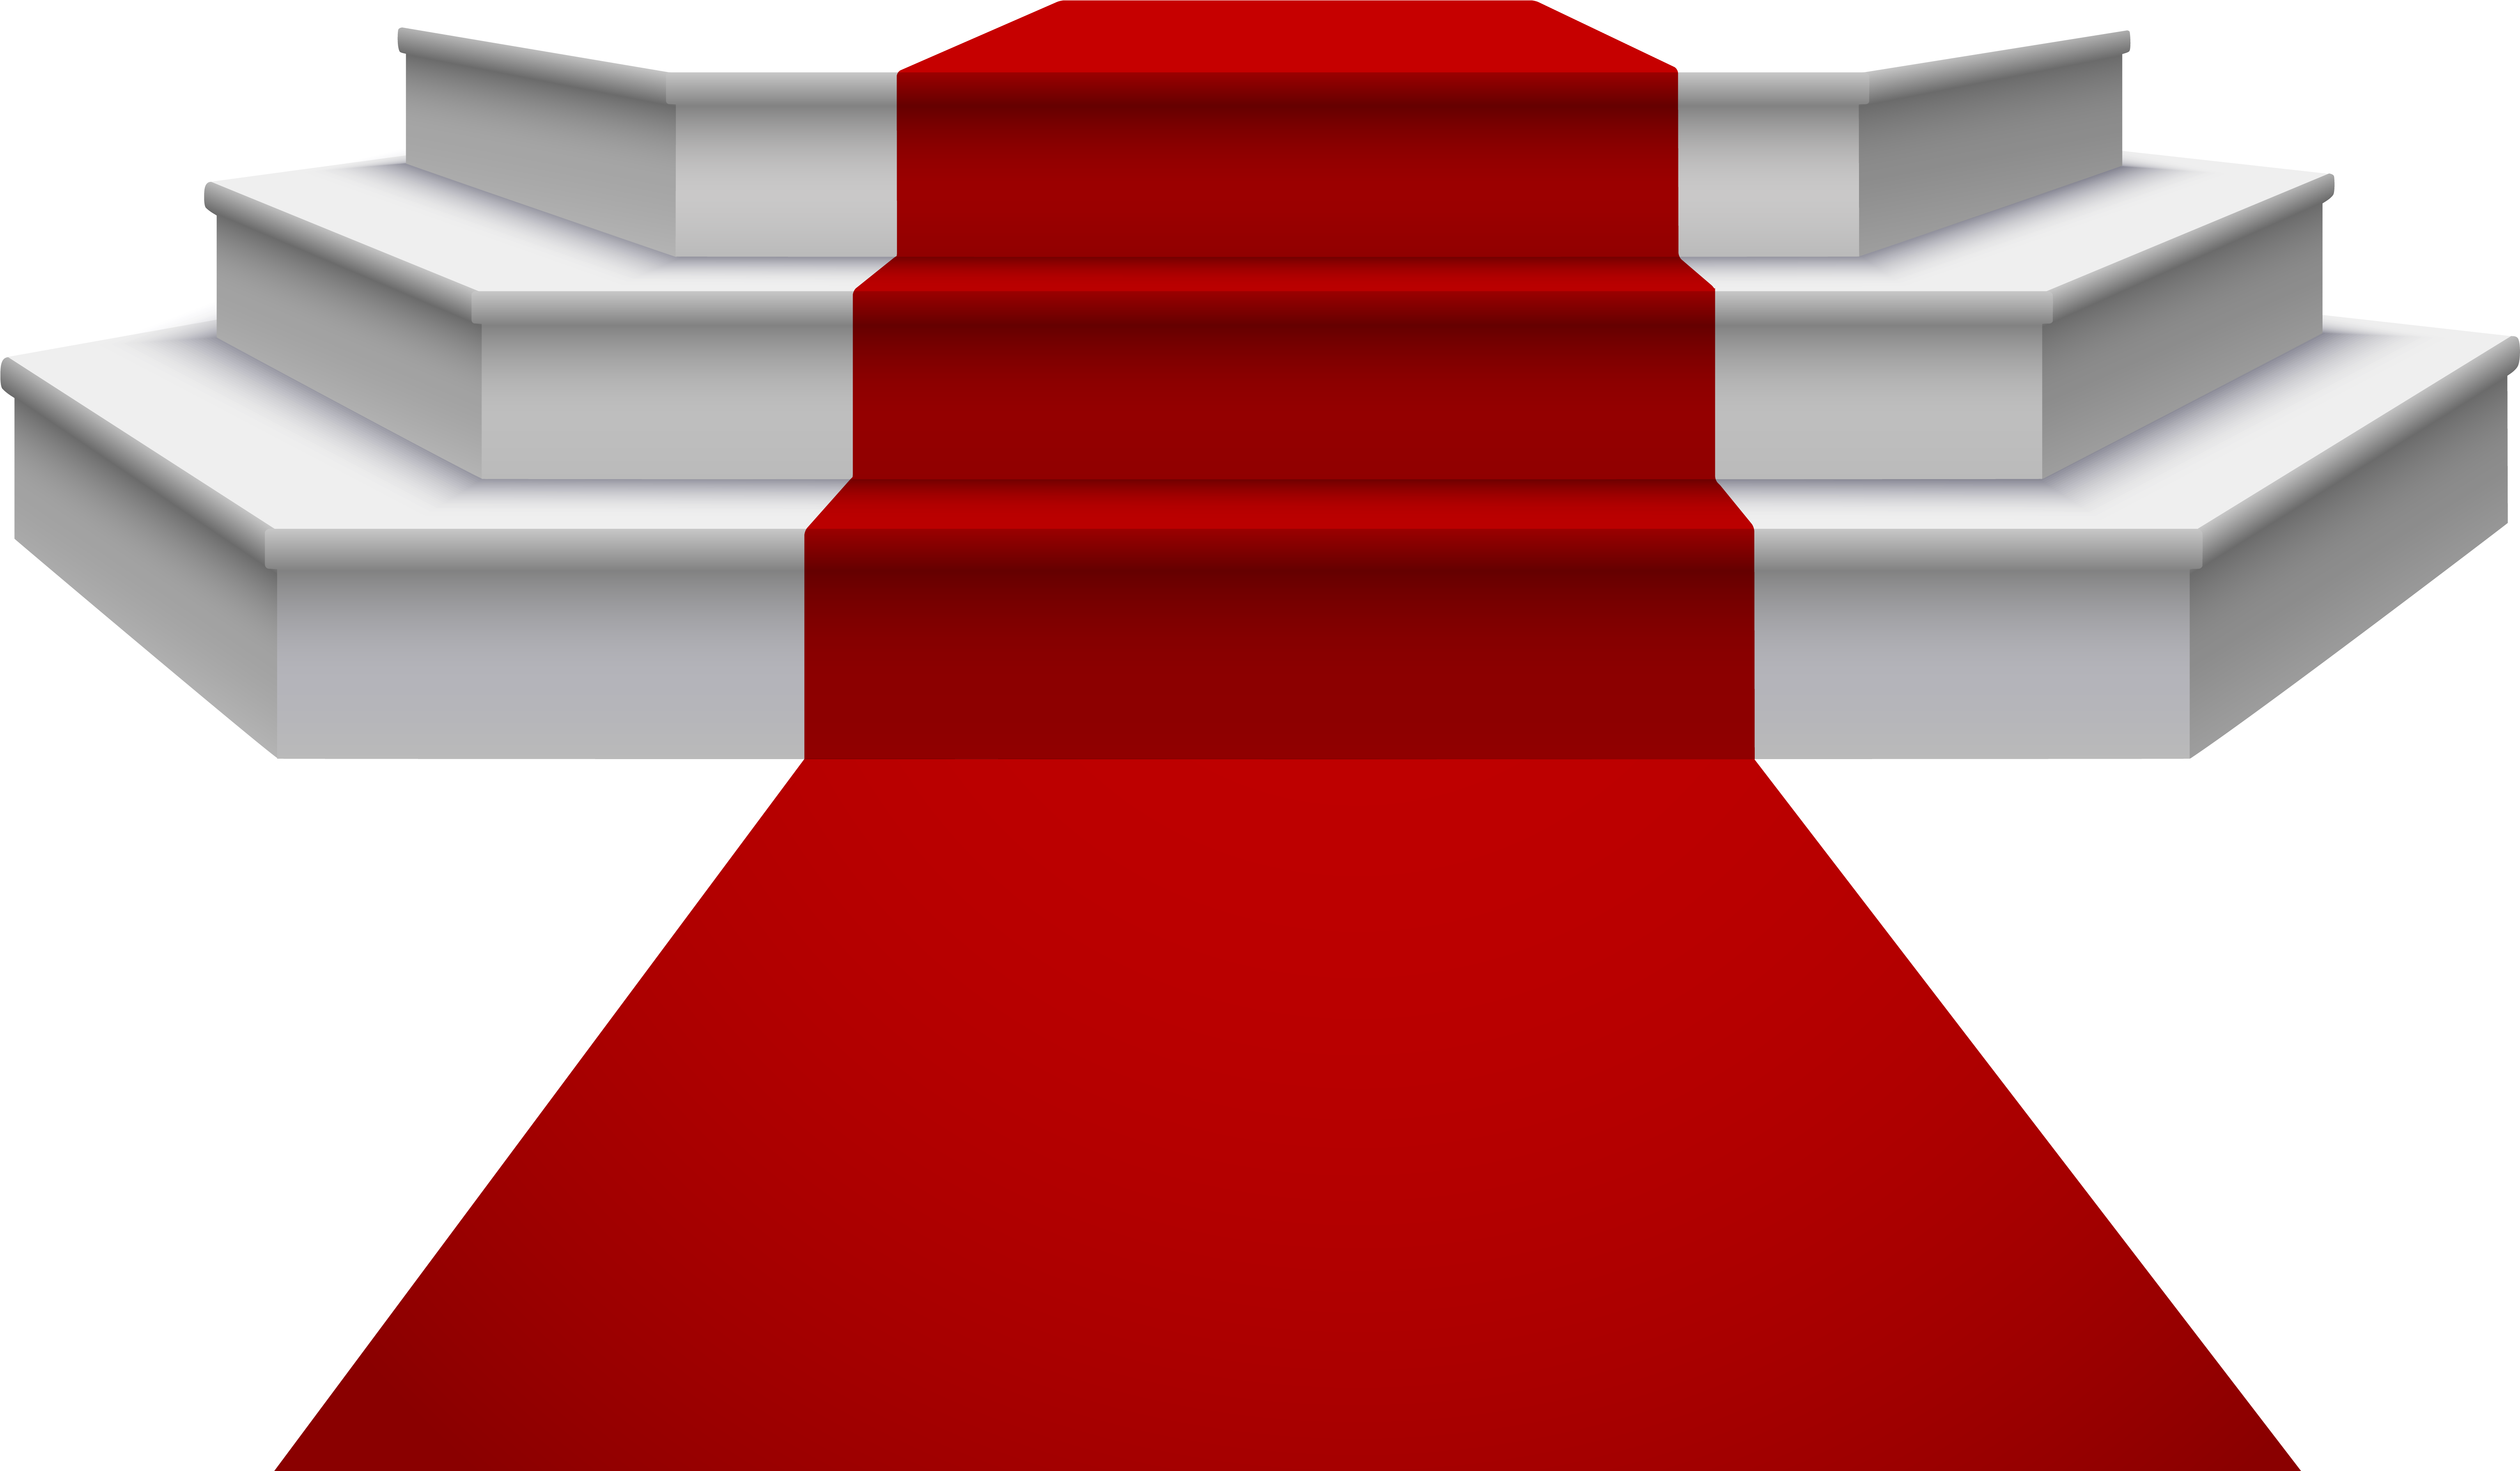 Ред карпет (Red Carpet),. Ступеньки на прозрачном фоне. Красная дорожка со ступеньками. Лестница с красной дорожкой. Красный подиум